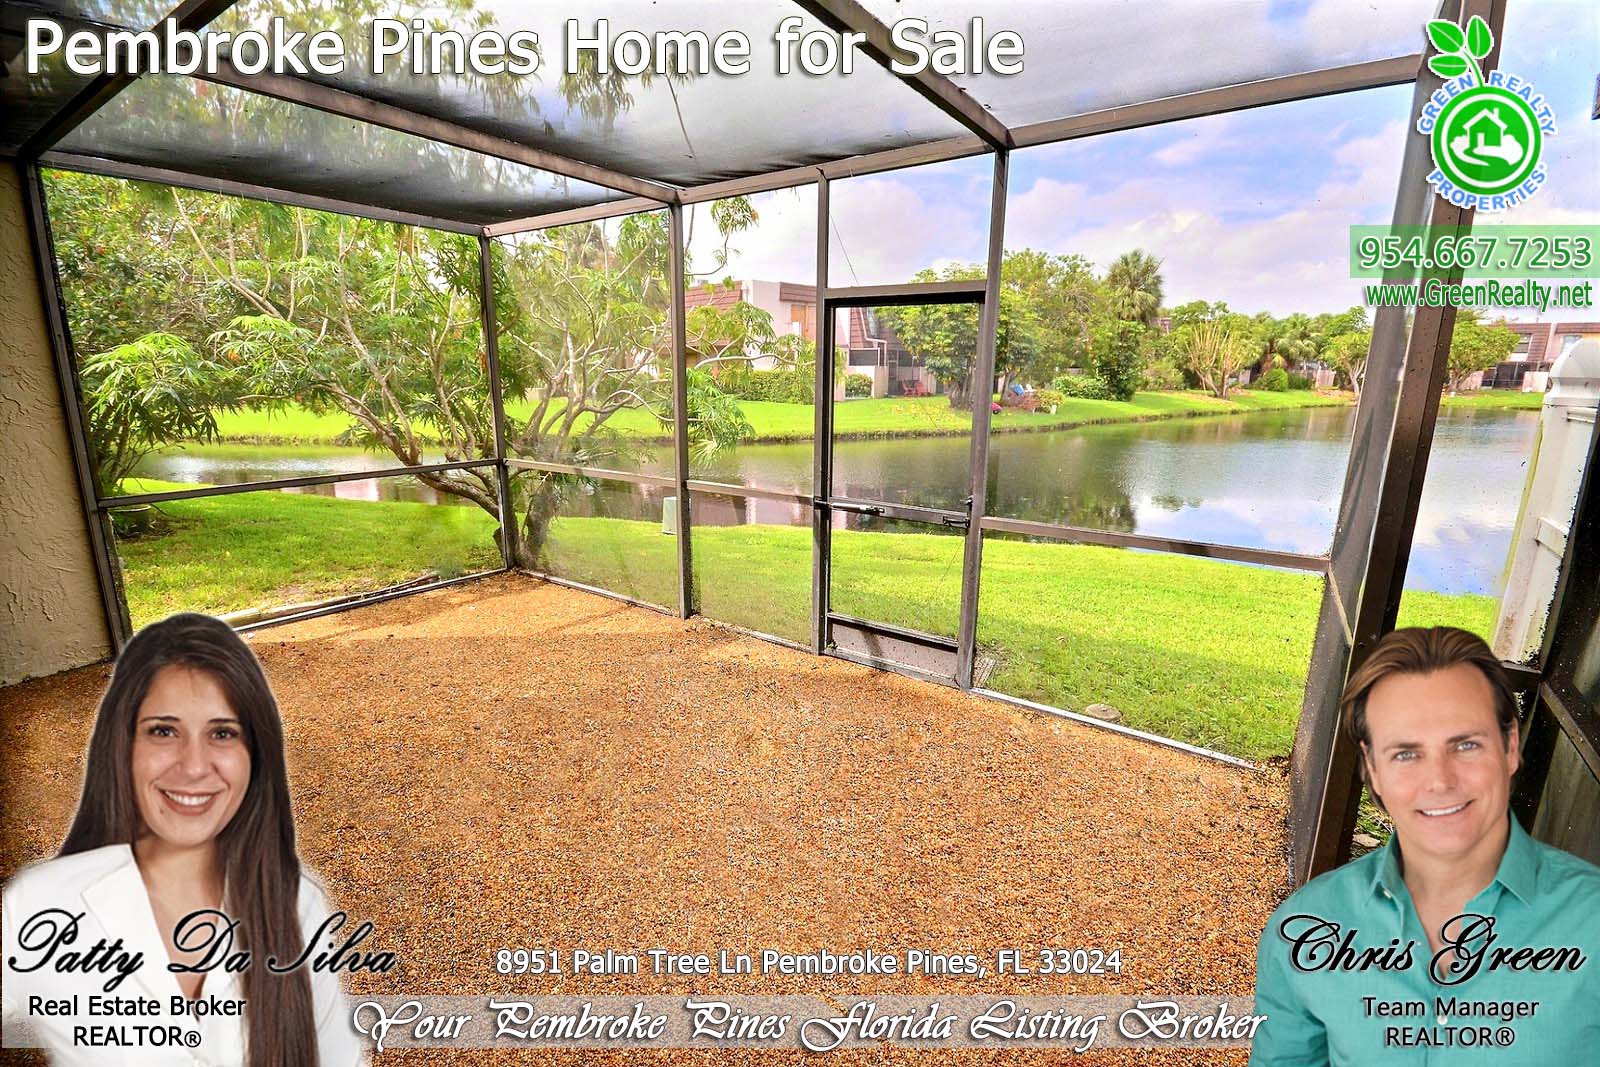 Pembroke Pines Homes For Sale - 8951 Palm Tree Lane (3)